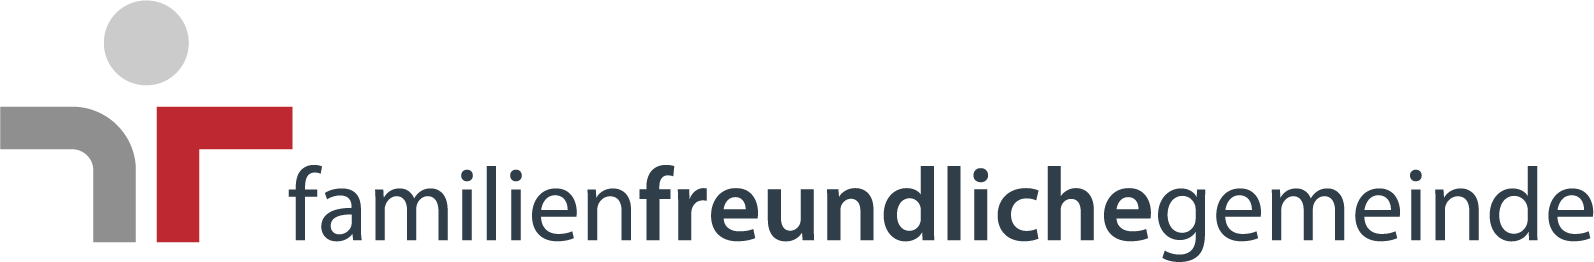 Familienfreundlichegemeinde Logo